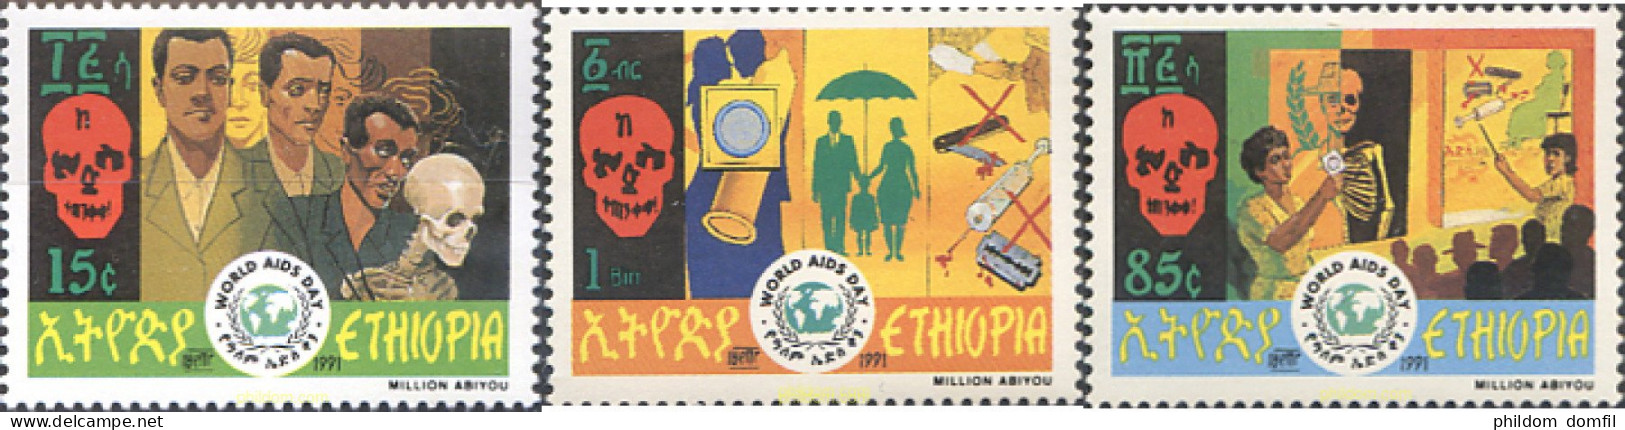 273271 MNH ETIOPIA 1991 DIA MUNDIAL DEL SIDA - Ethiopia